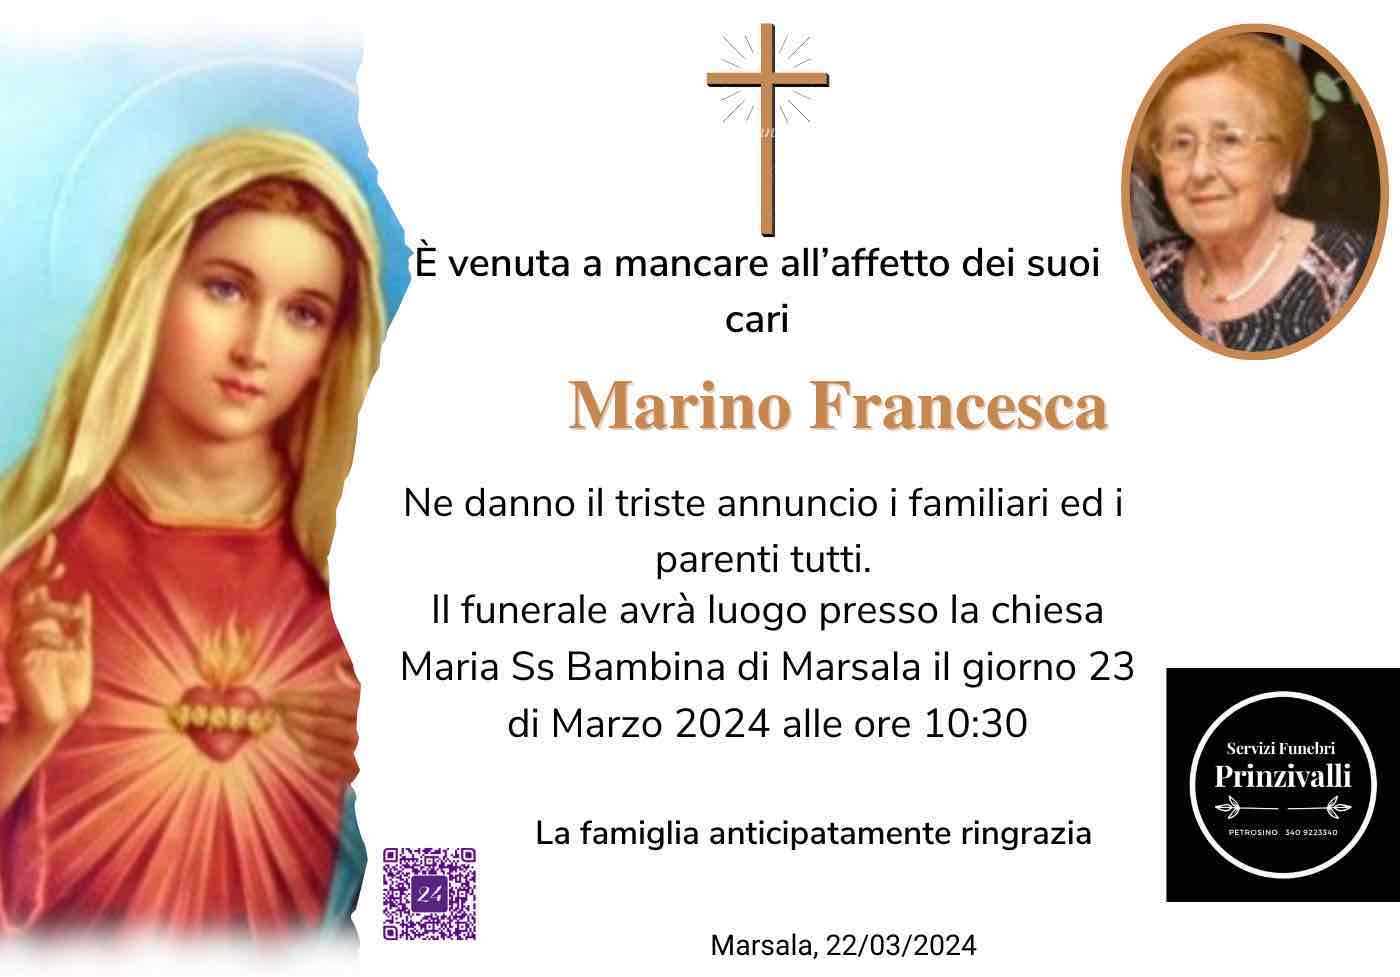 Francesca Marino